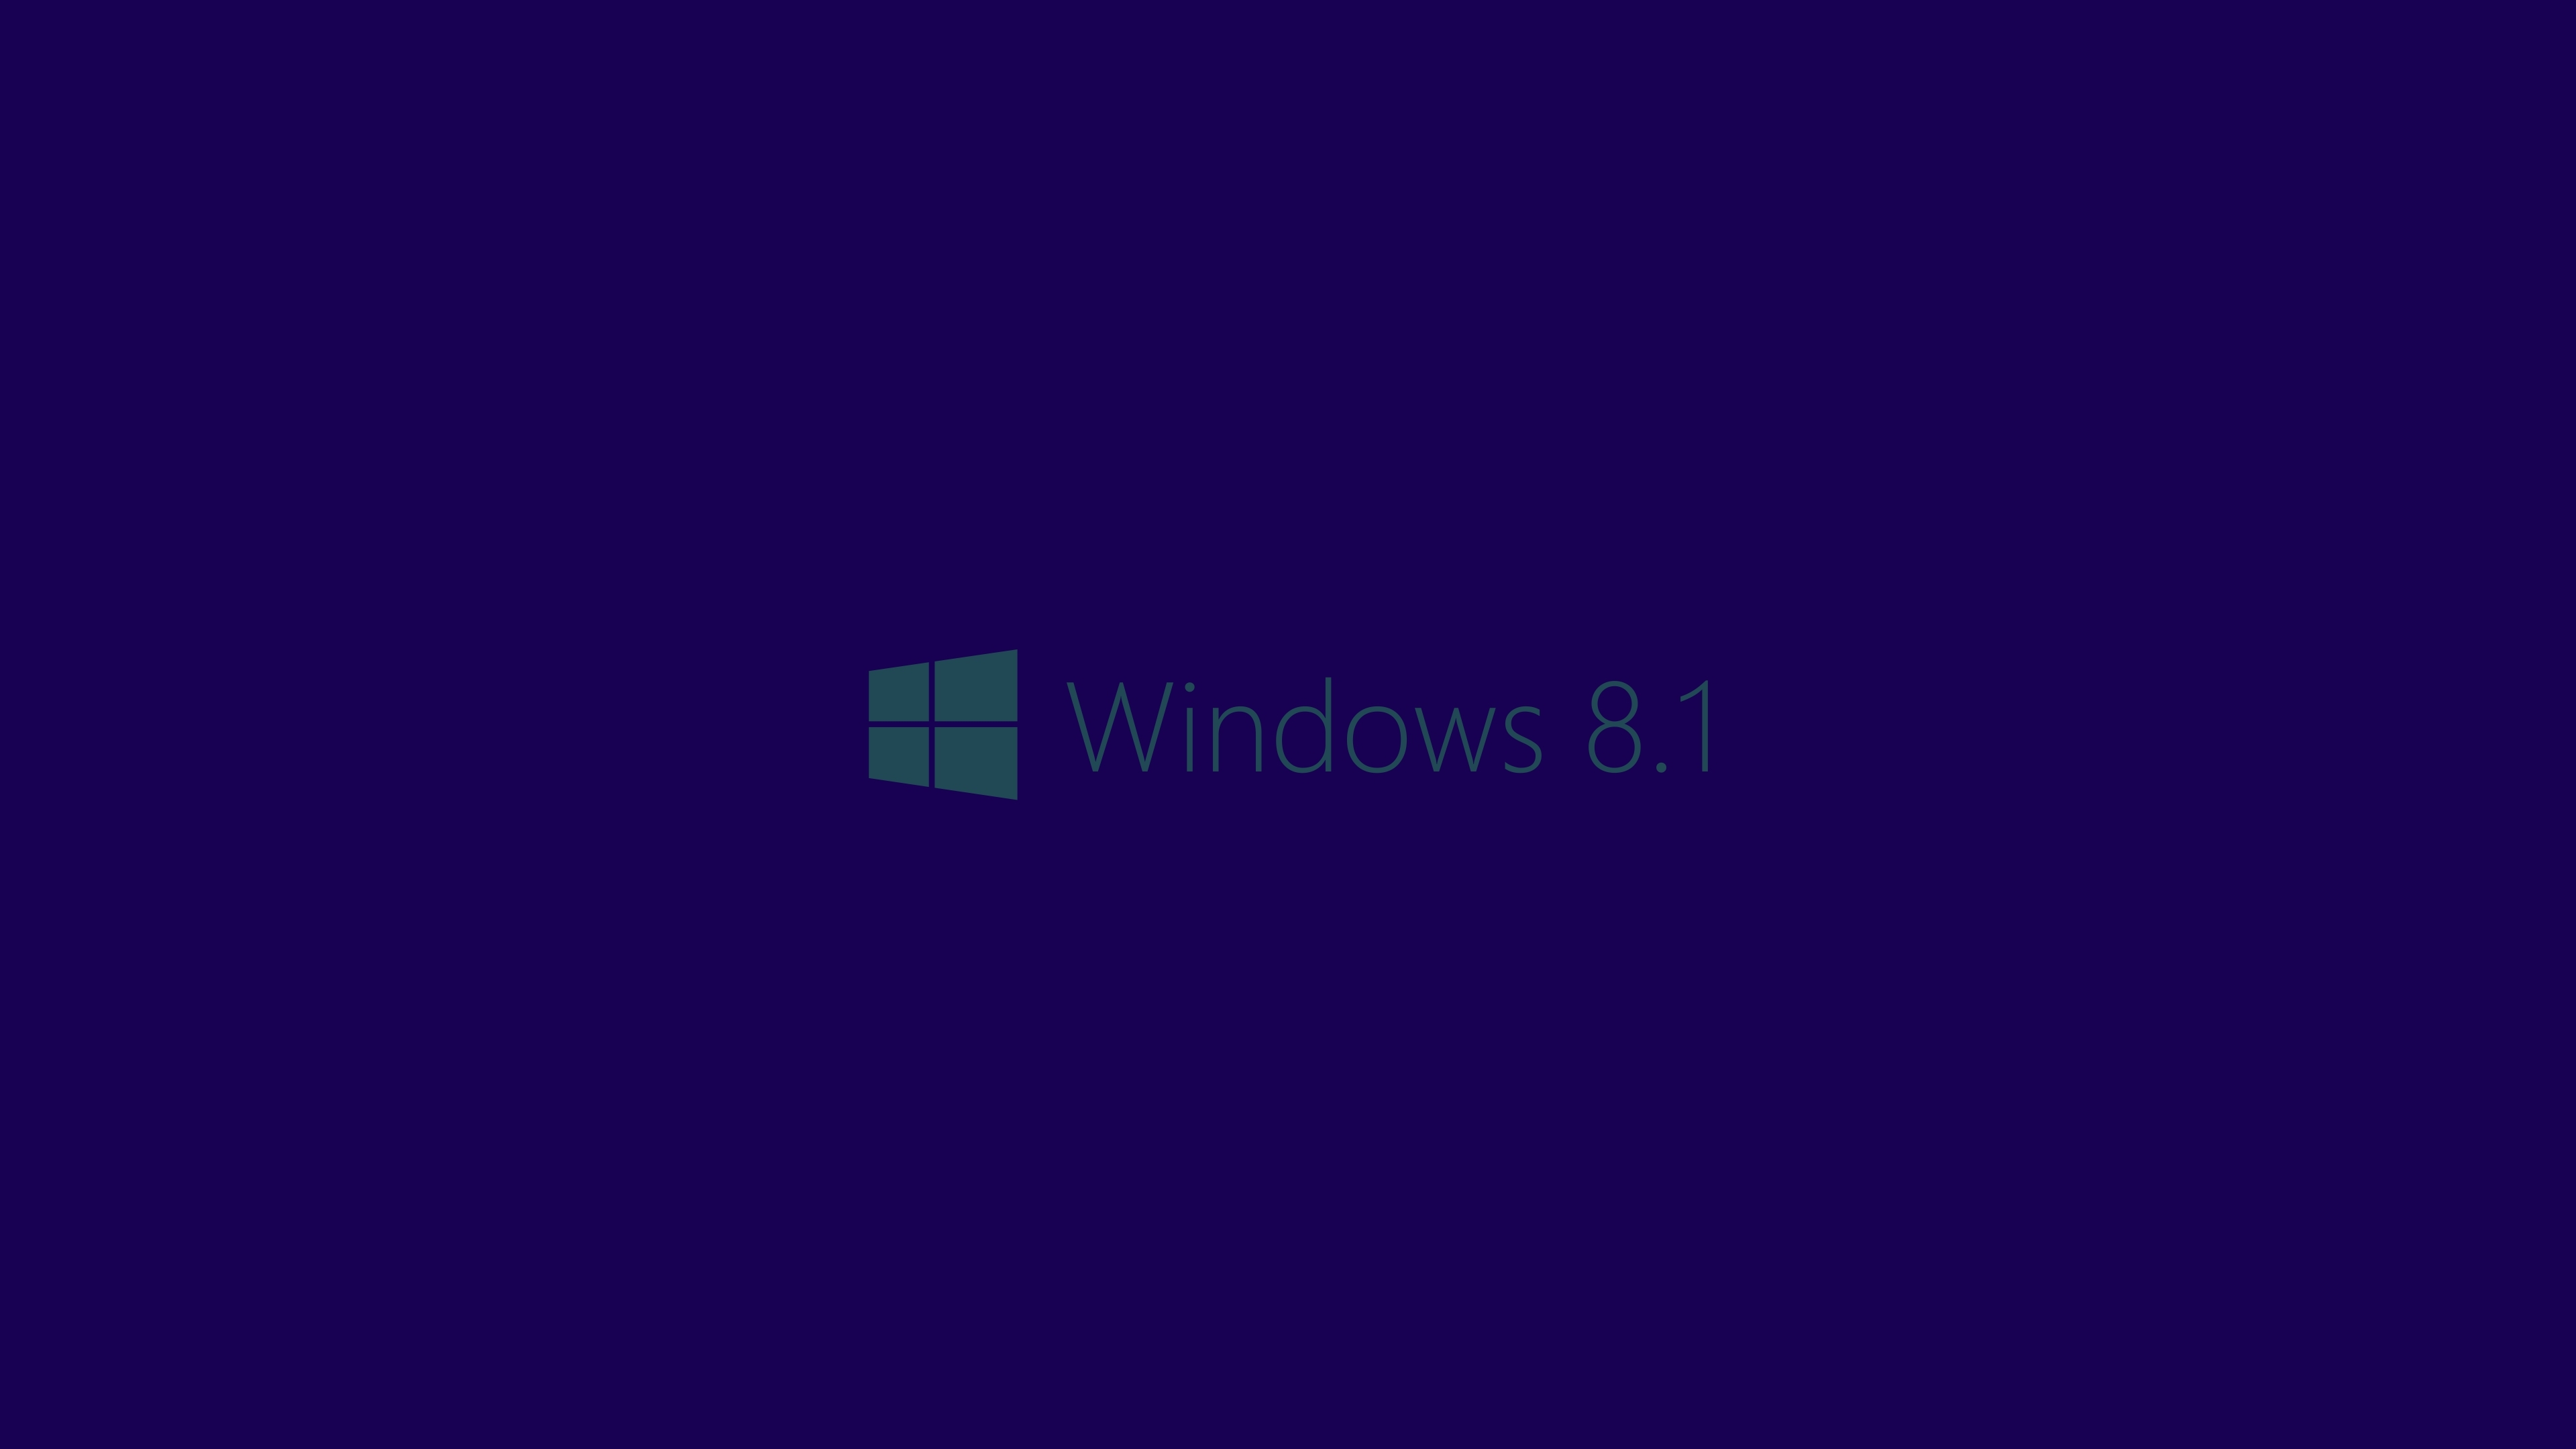 윈도우 8.1 벽지,푸른,제비꽃,검정,보라색,짙은 청록색